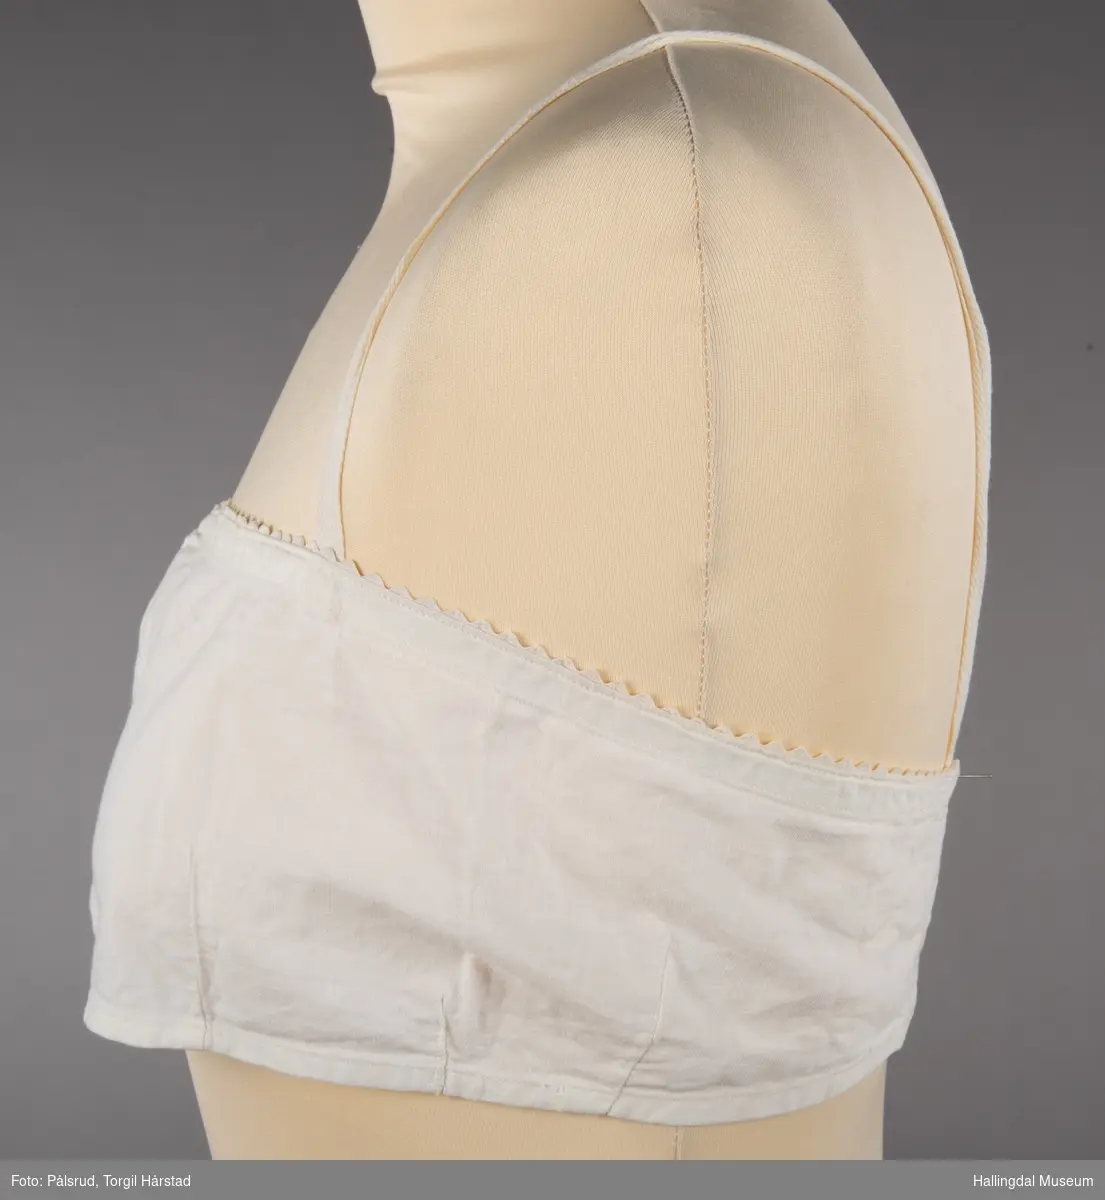 En hvit brystholder i bomull med hvit kroklisse i øvre linning. To enkle skulderstropper. To hvite perlemorsknapper bak som festes i enten to hemper eller to knapphull.